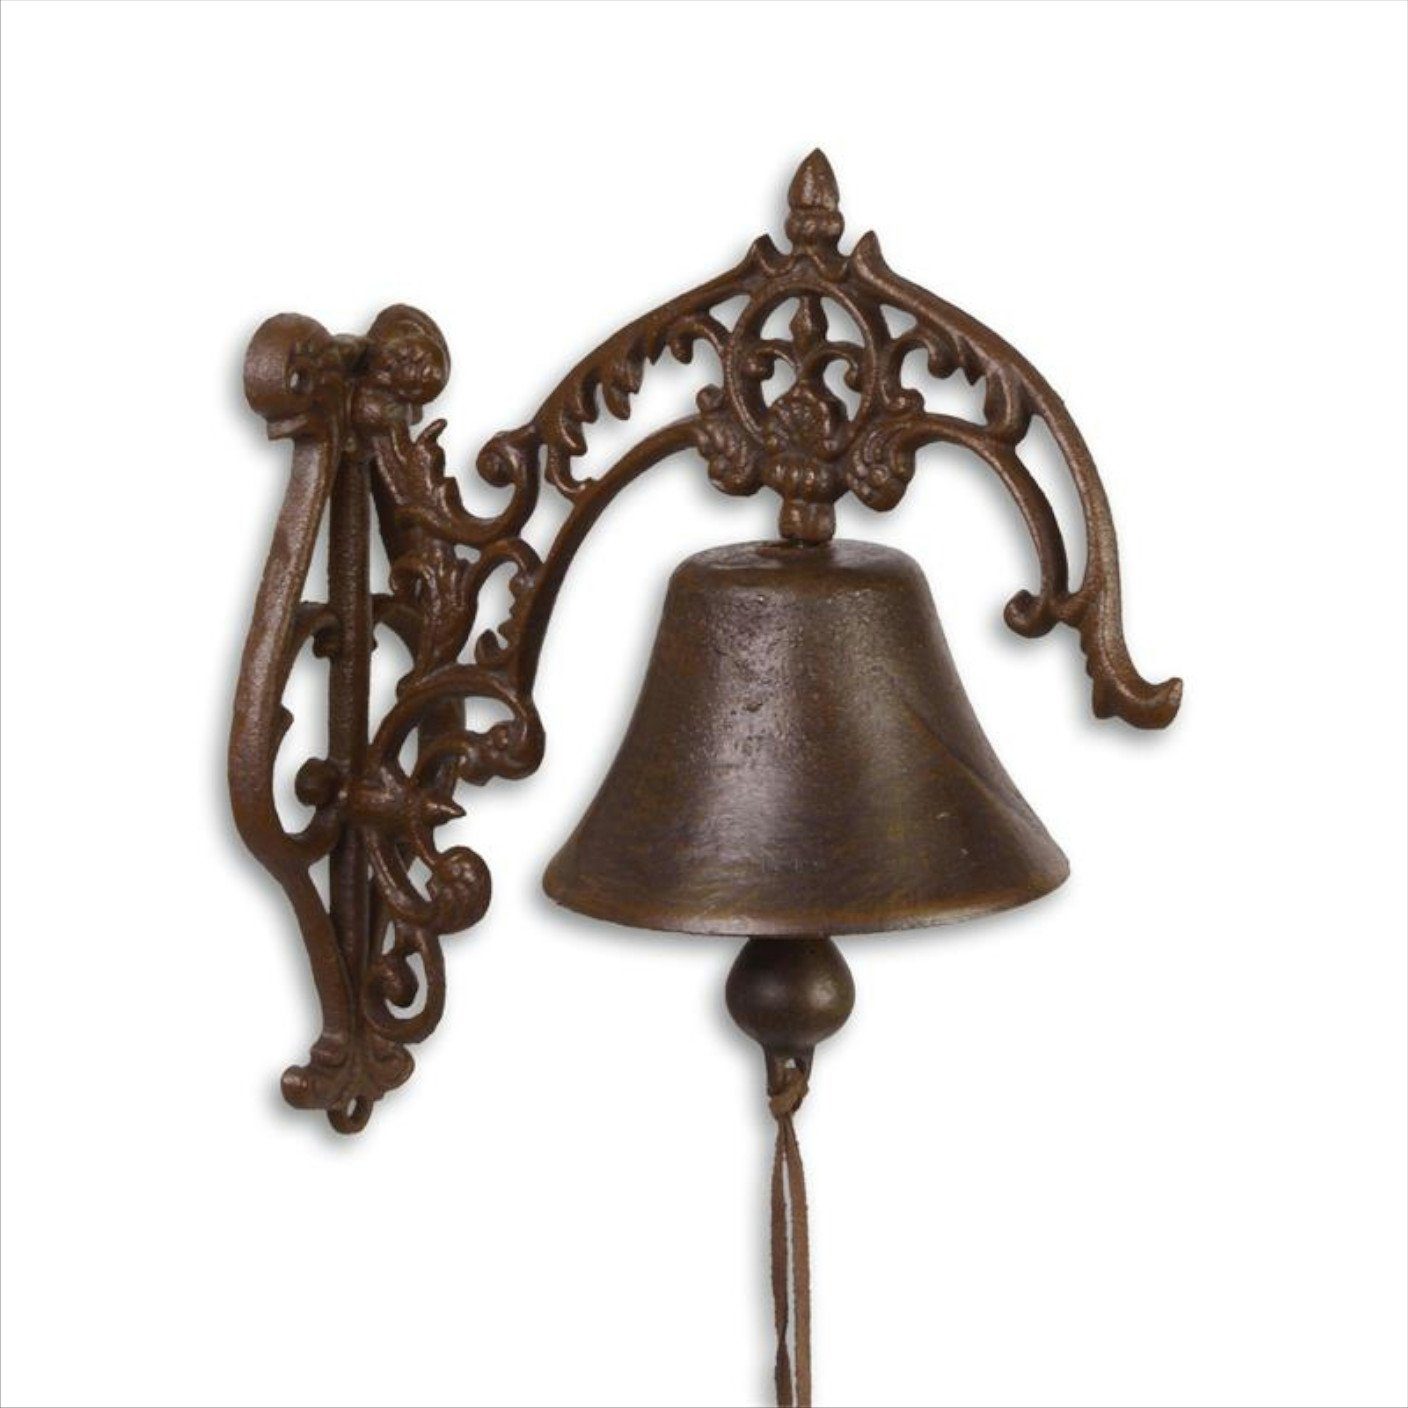 Moritz Gartenfigur Glocke mit Ornamenten groß, Gusseisen Türglocke Wandglocke Glocke Klingel Gong Antik Landhaus